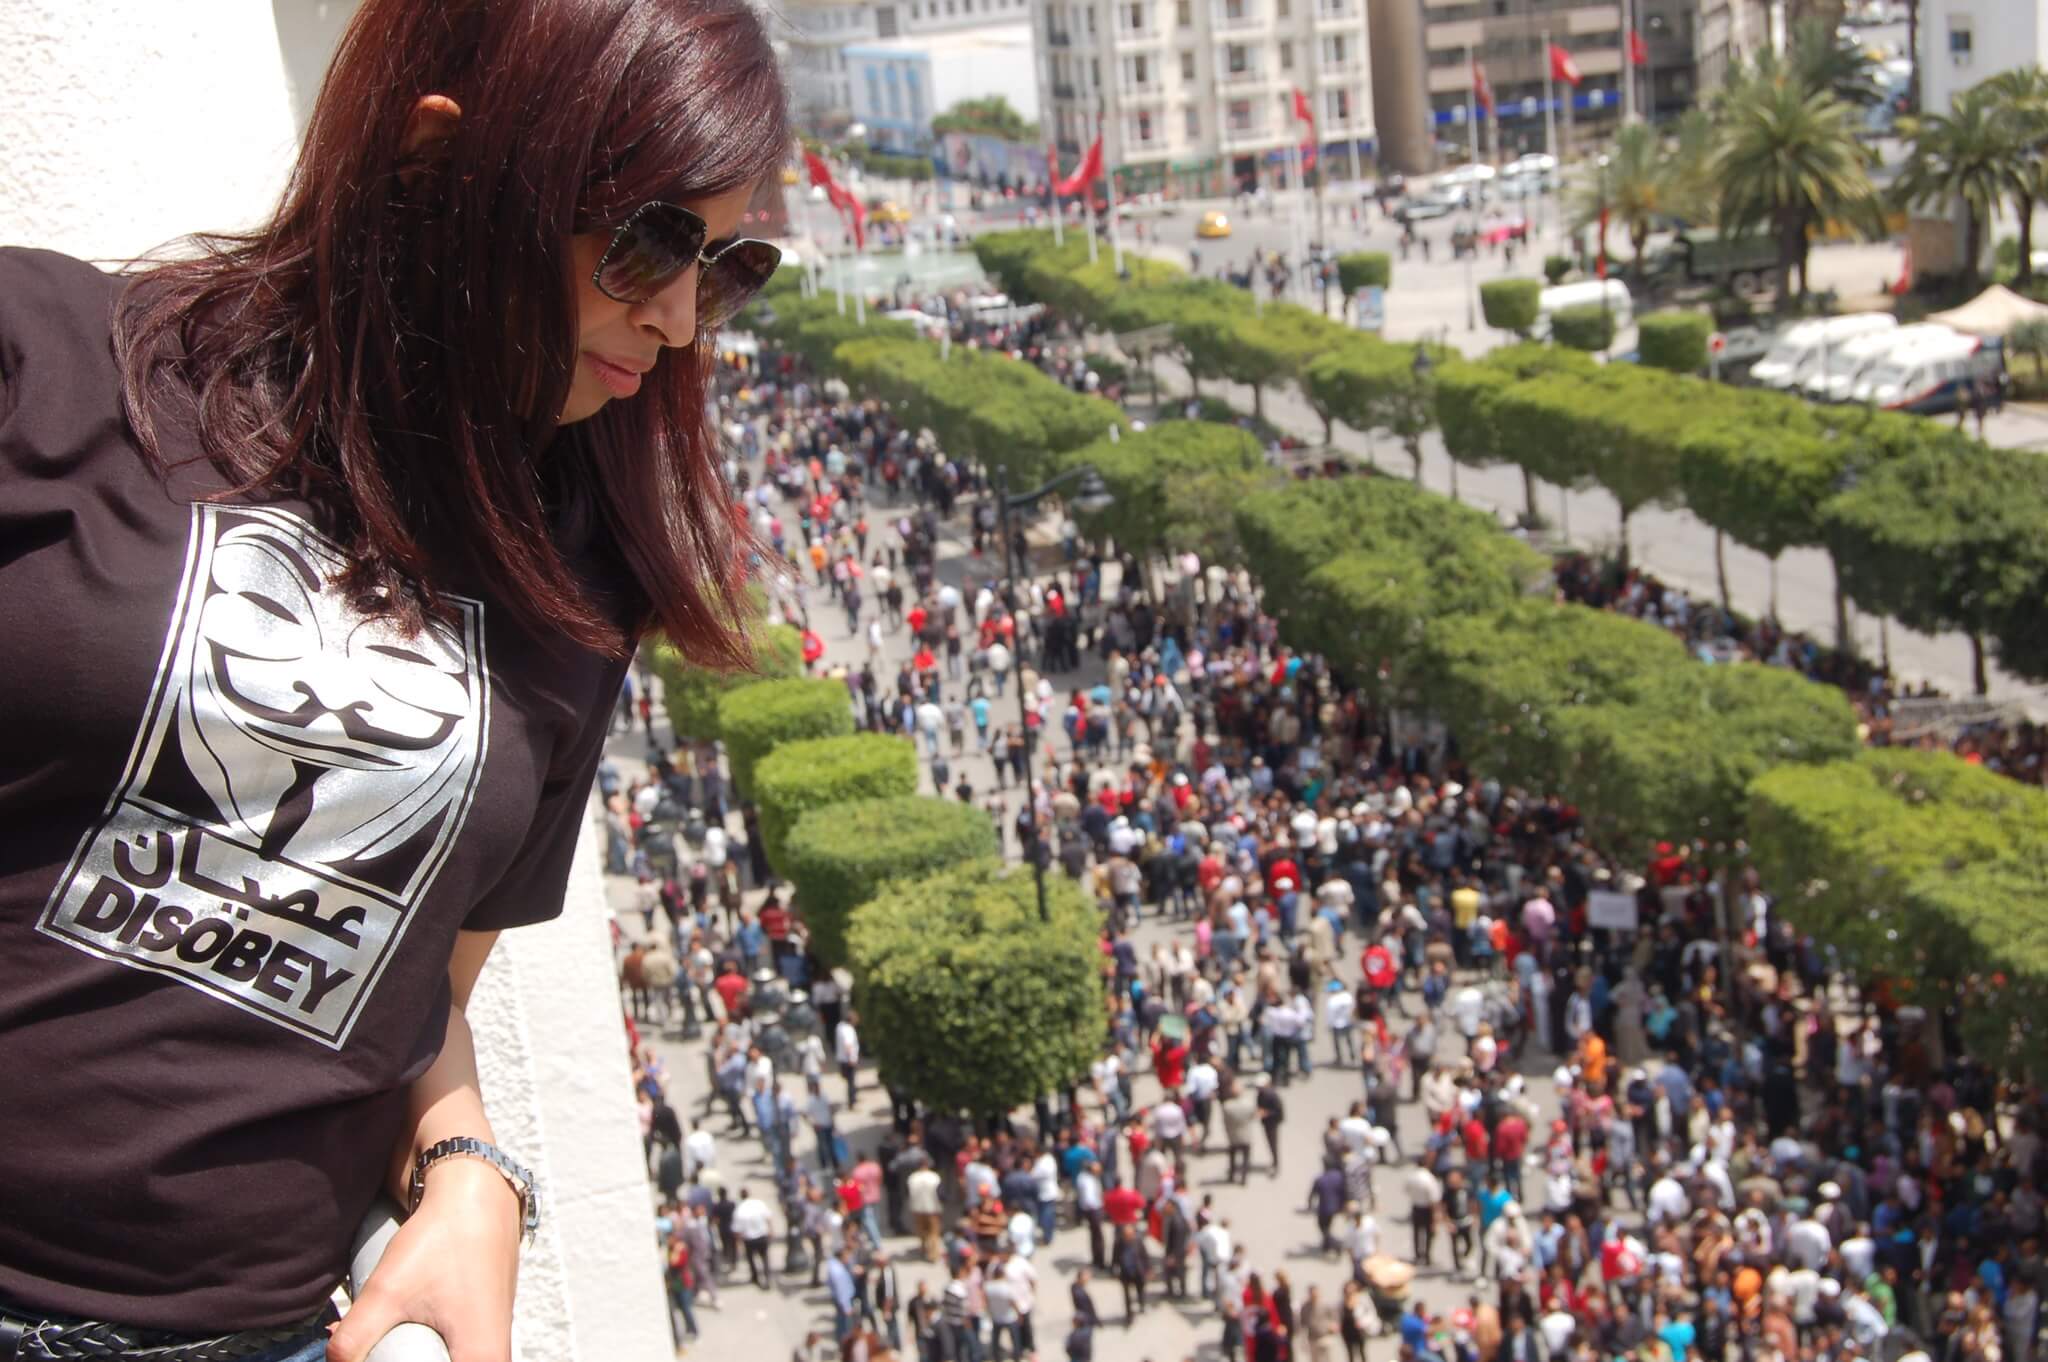 Aarts-Demonstratie in Tunis op 1 mei 2012. scossargilbert - Flickr